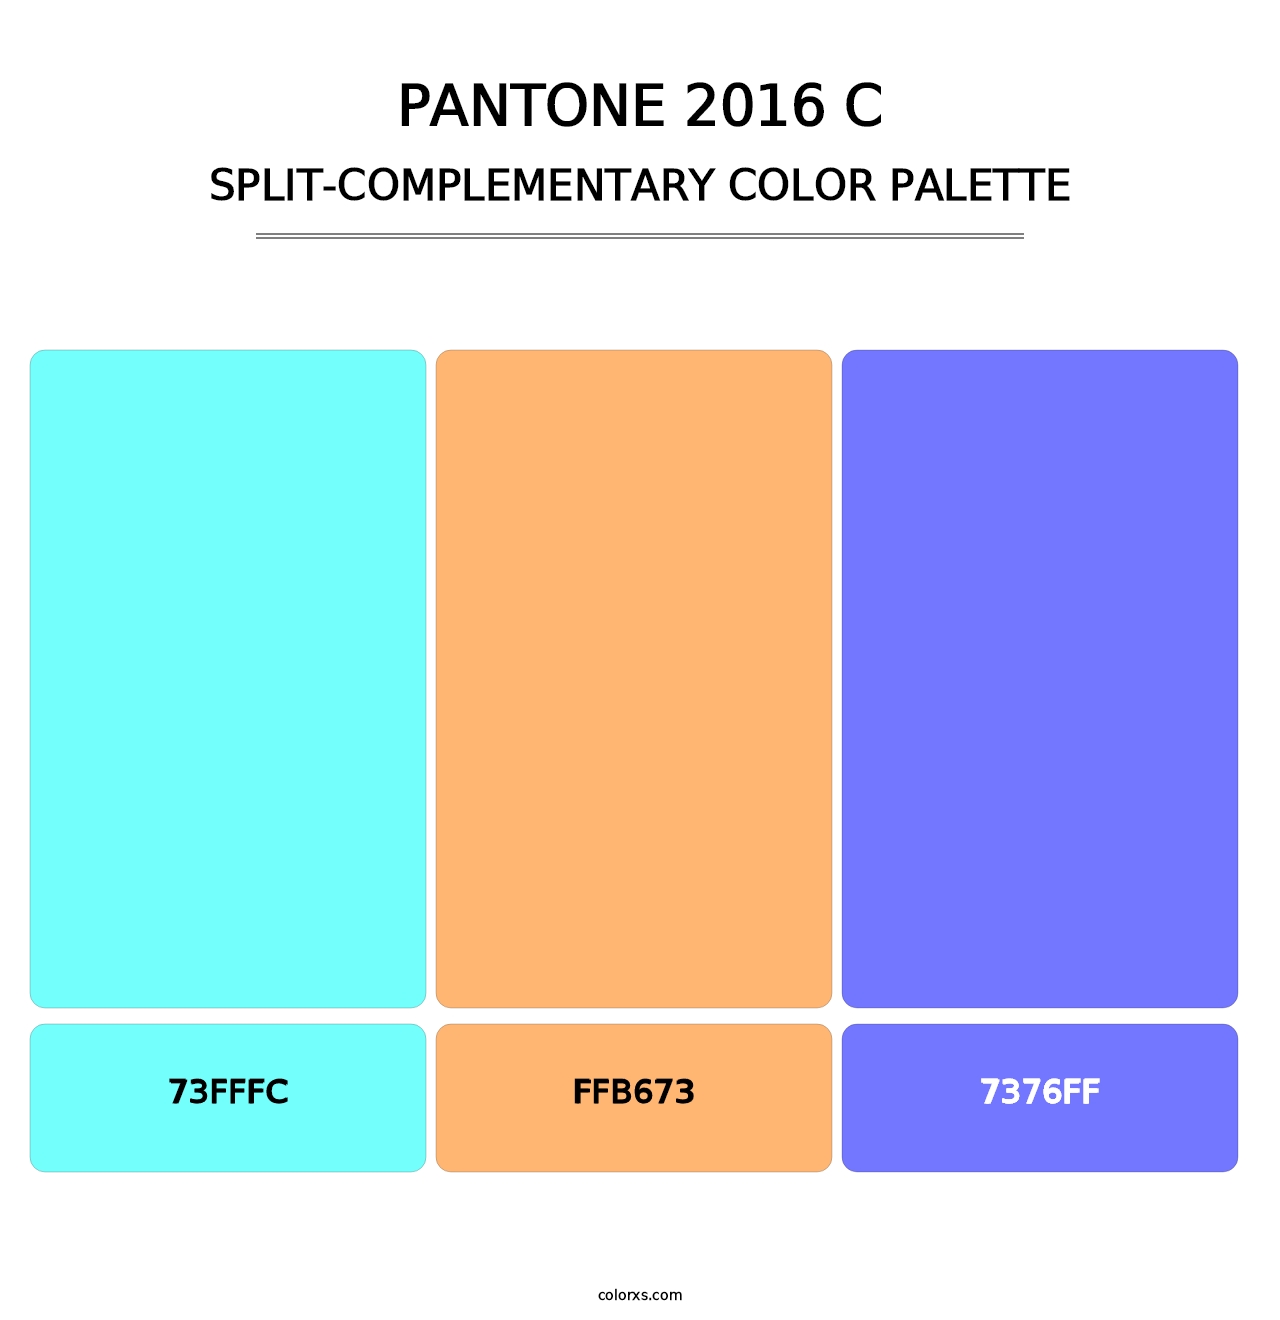 PANTONE 2016 C - Split-Complementary Color Palette